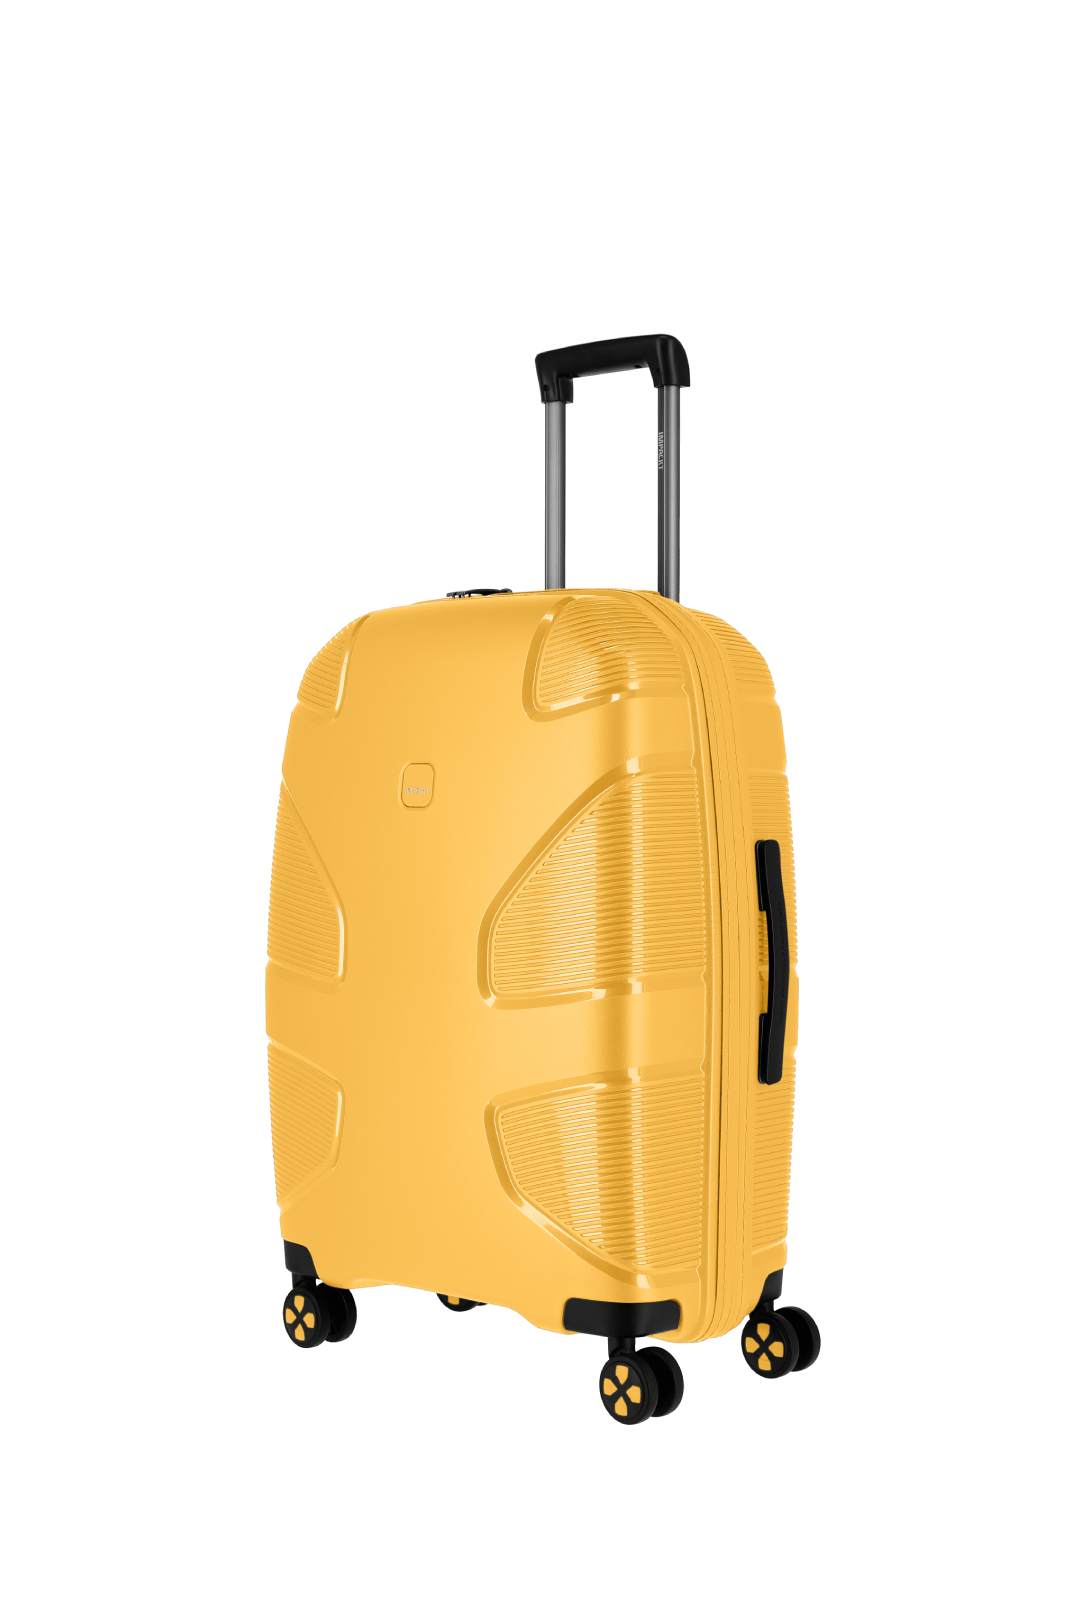 Impackt Koffer IP1 M Sunset Yellow